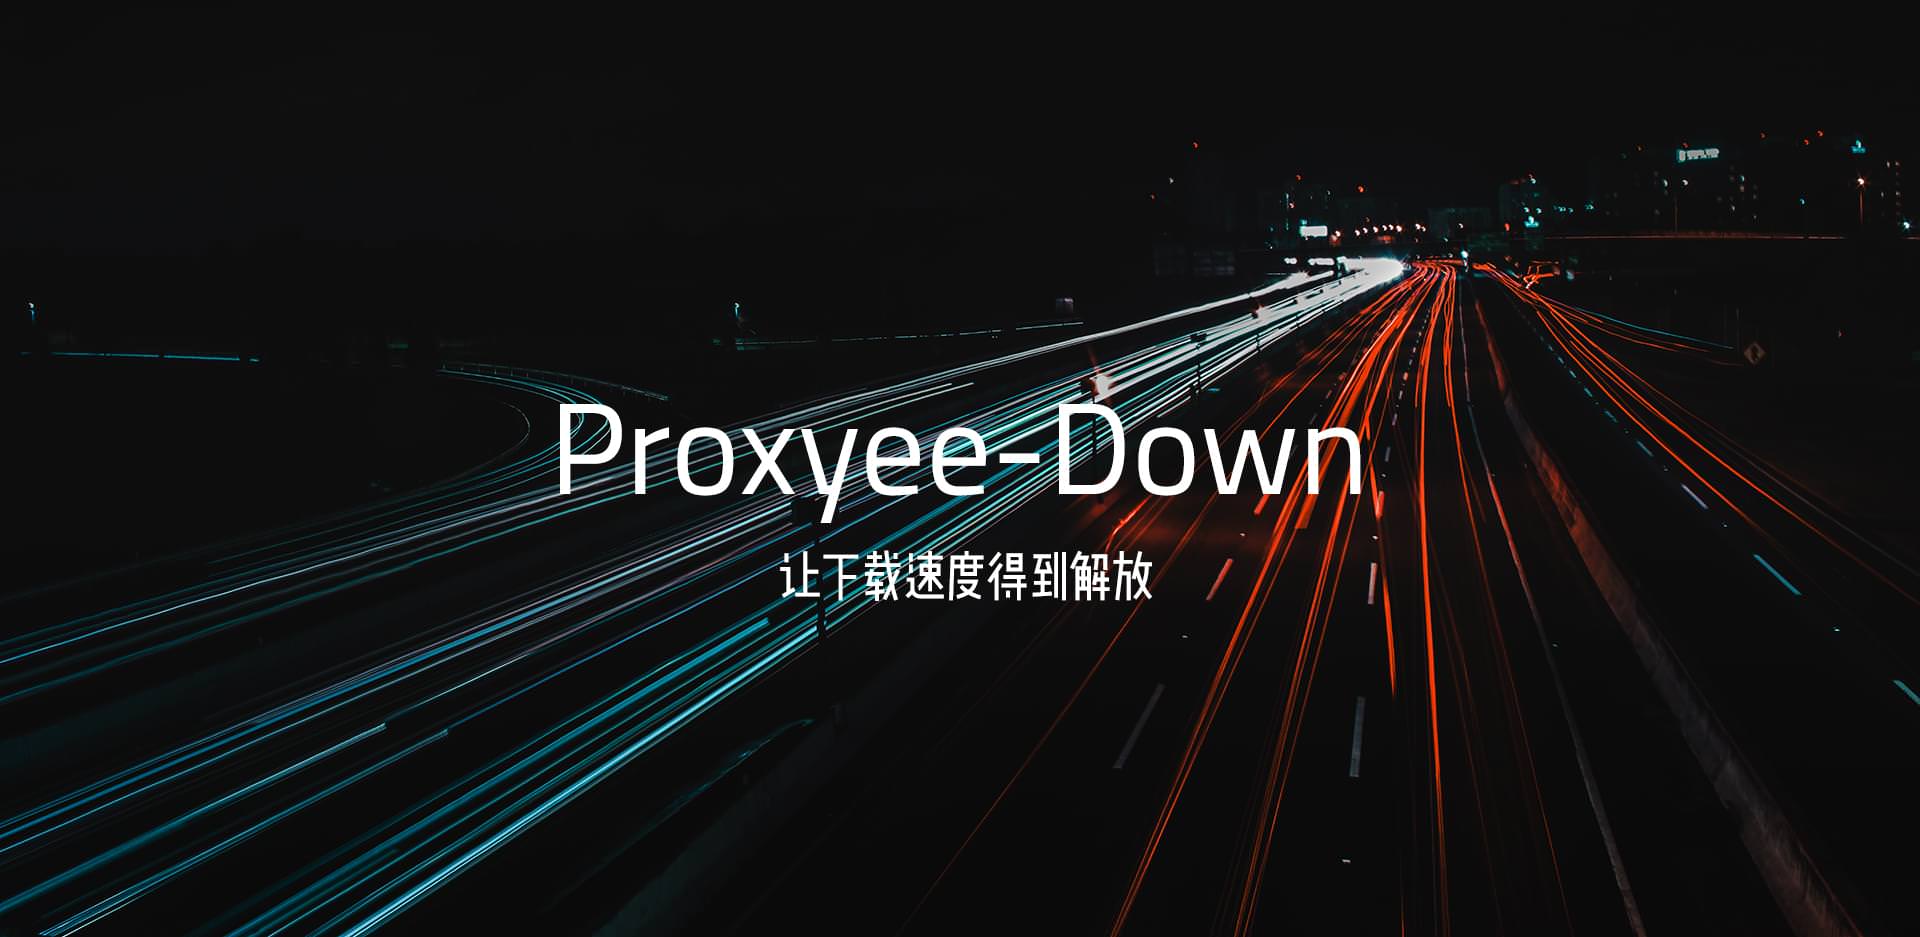 [工具] Proxyee-Down v3.4.0 百度网盘不限速下载神器 (免登录/绿色)